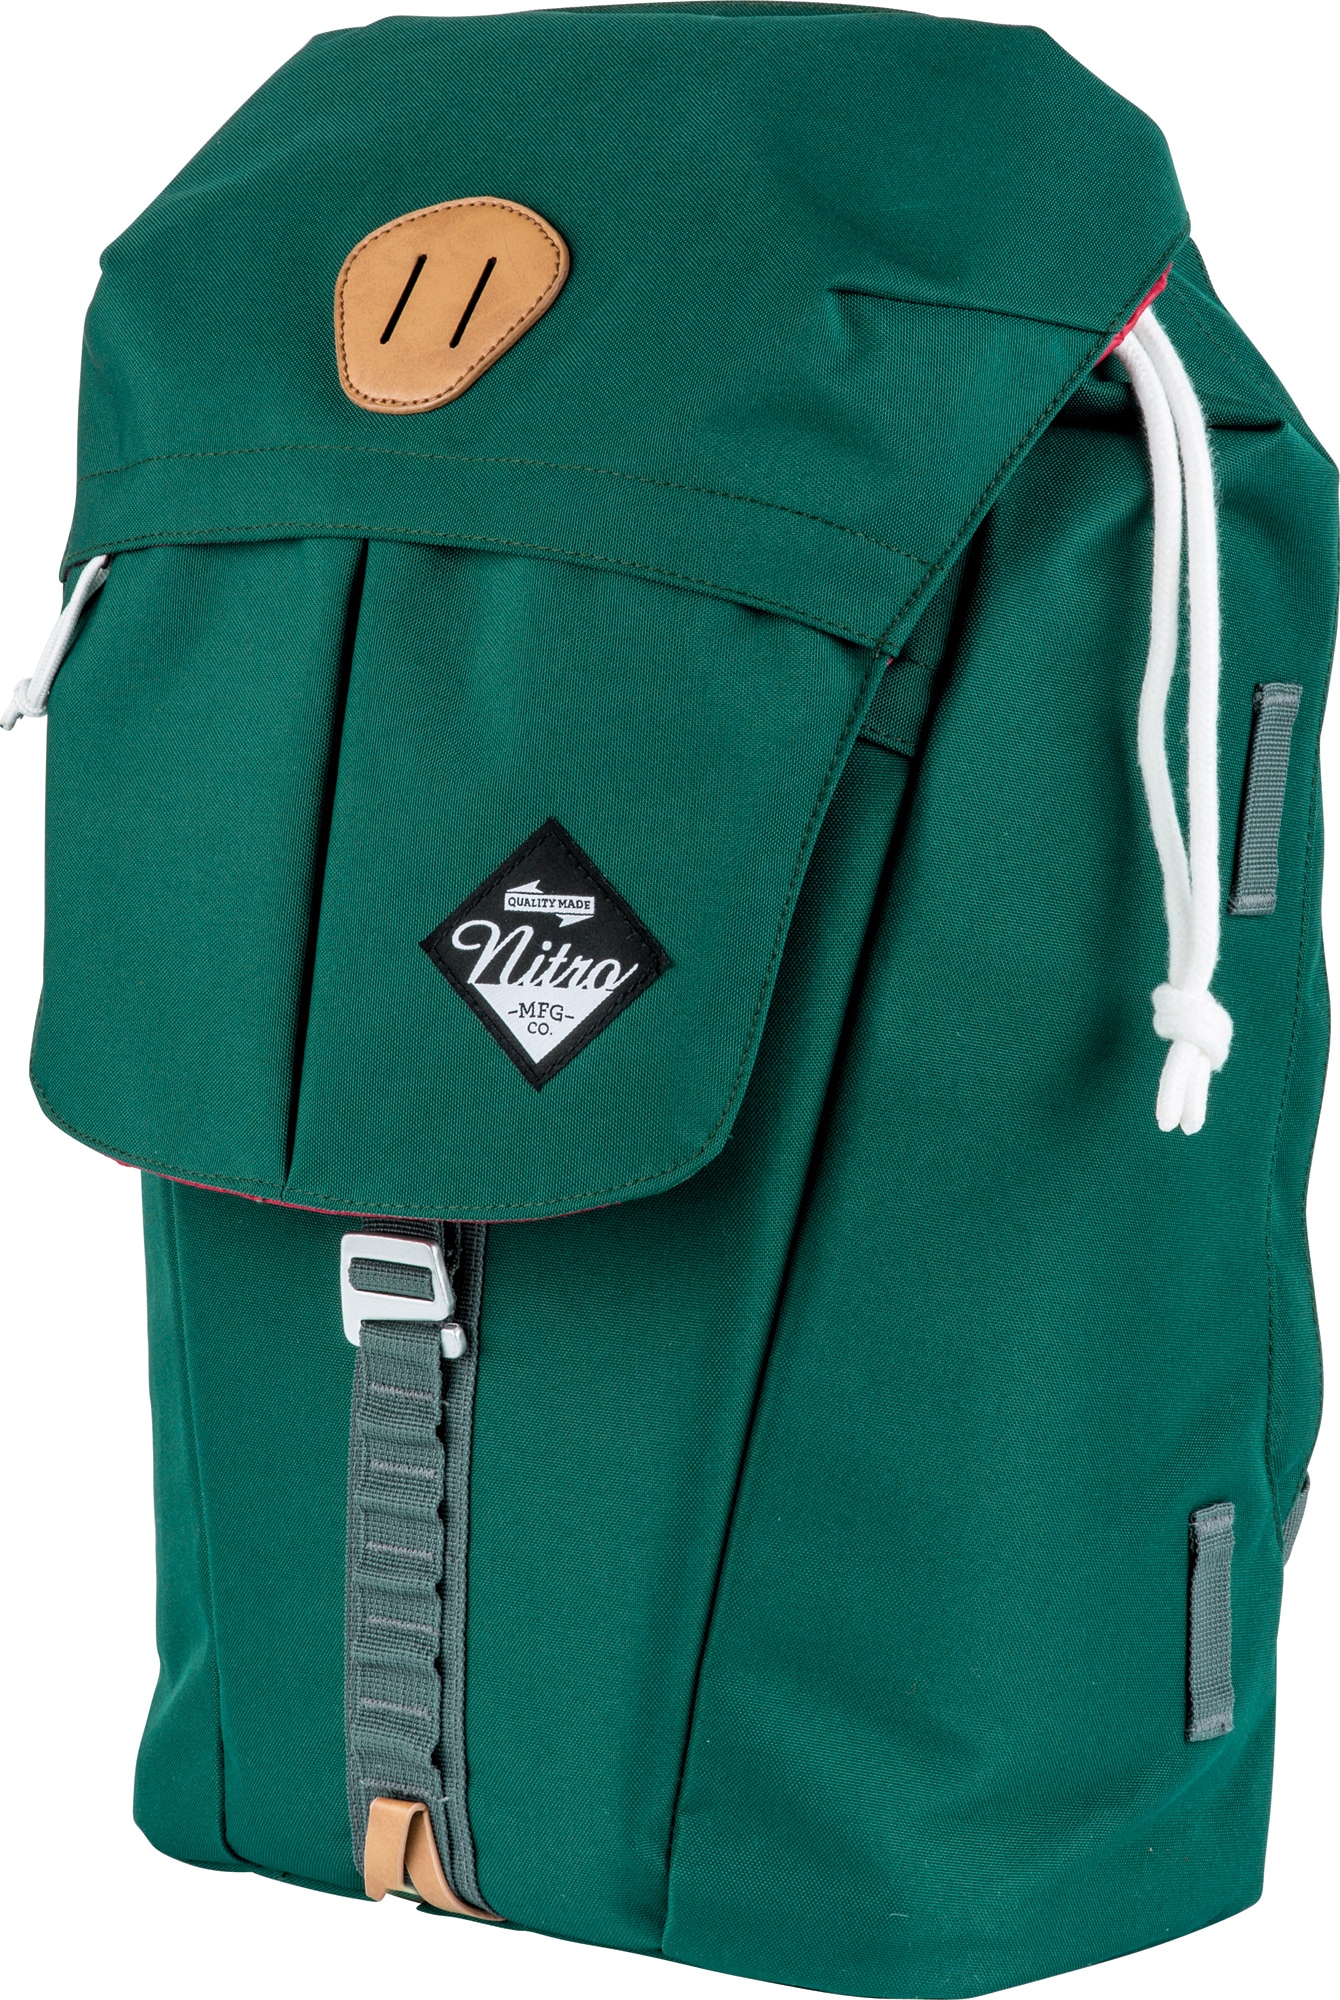 Laptoprucksack »Cypress«, Schulrucksack, Daypack, Schoolbag, Sportrucksack